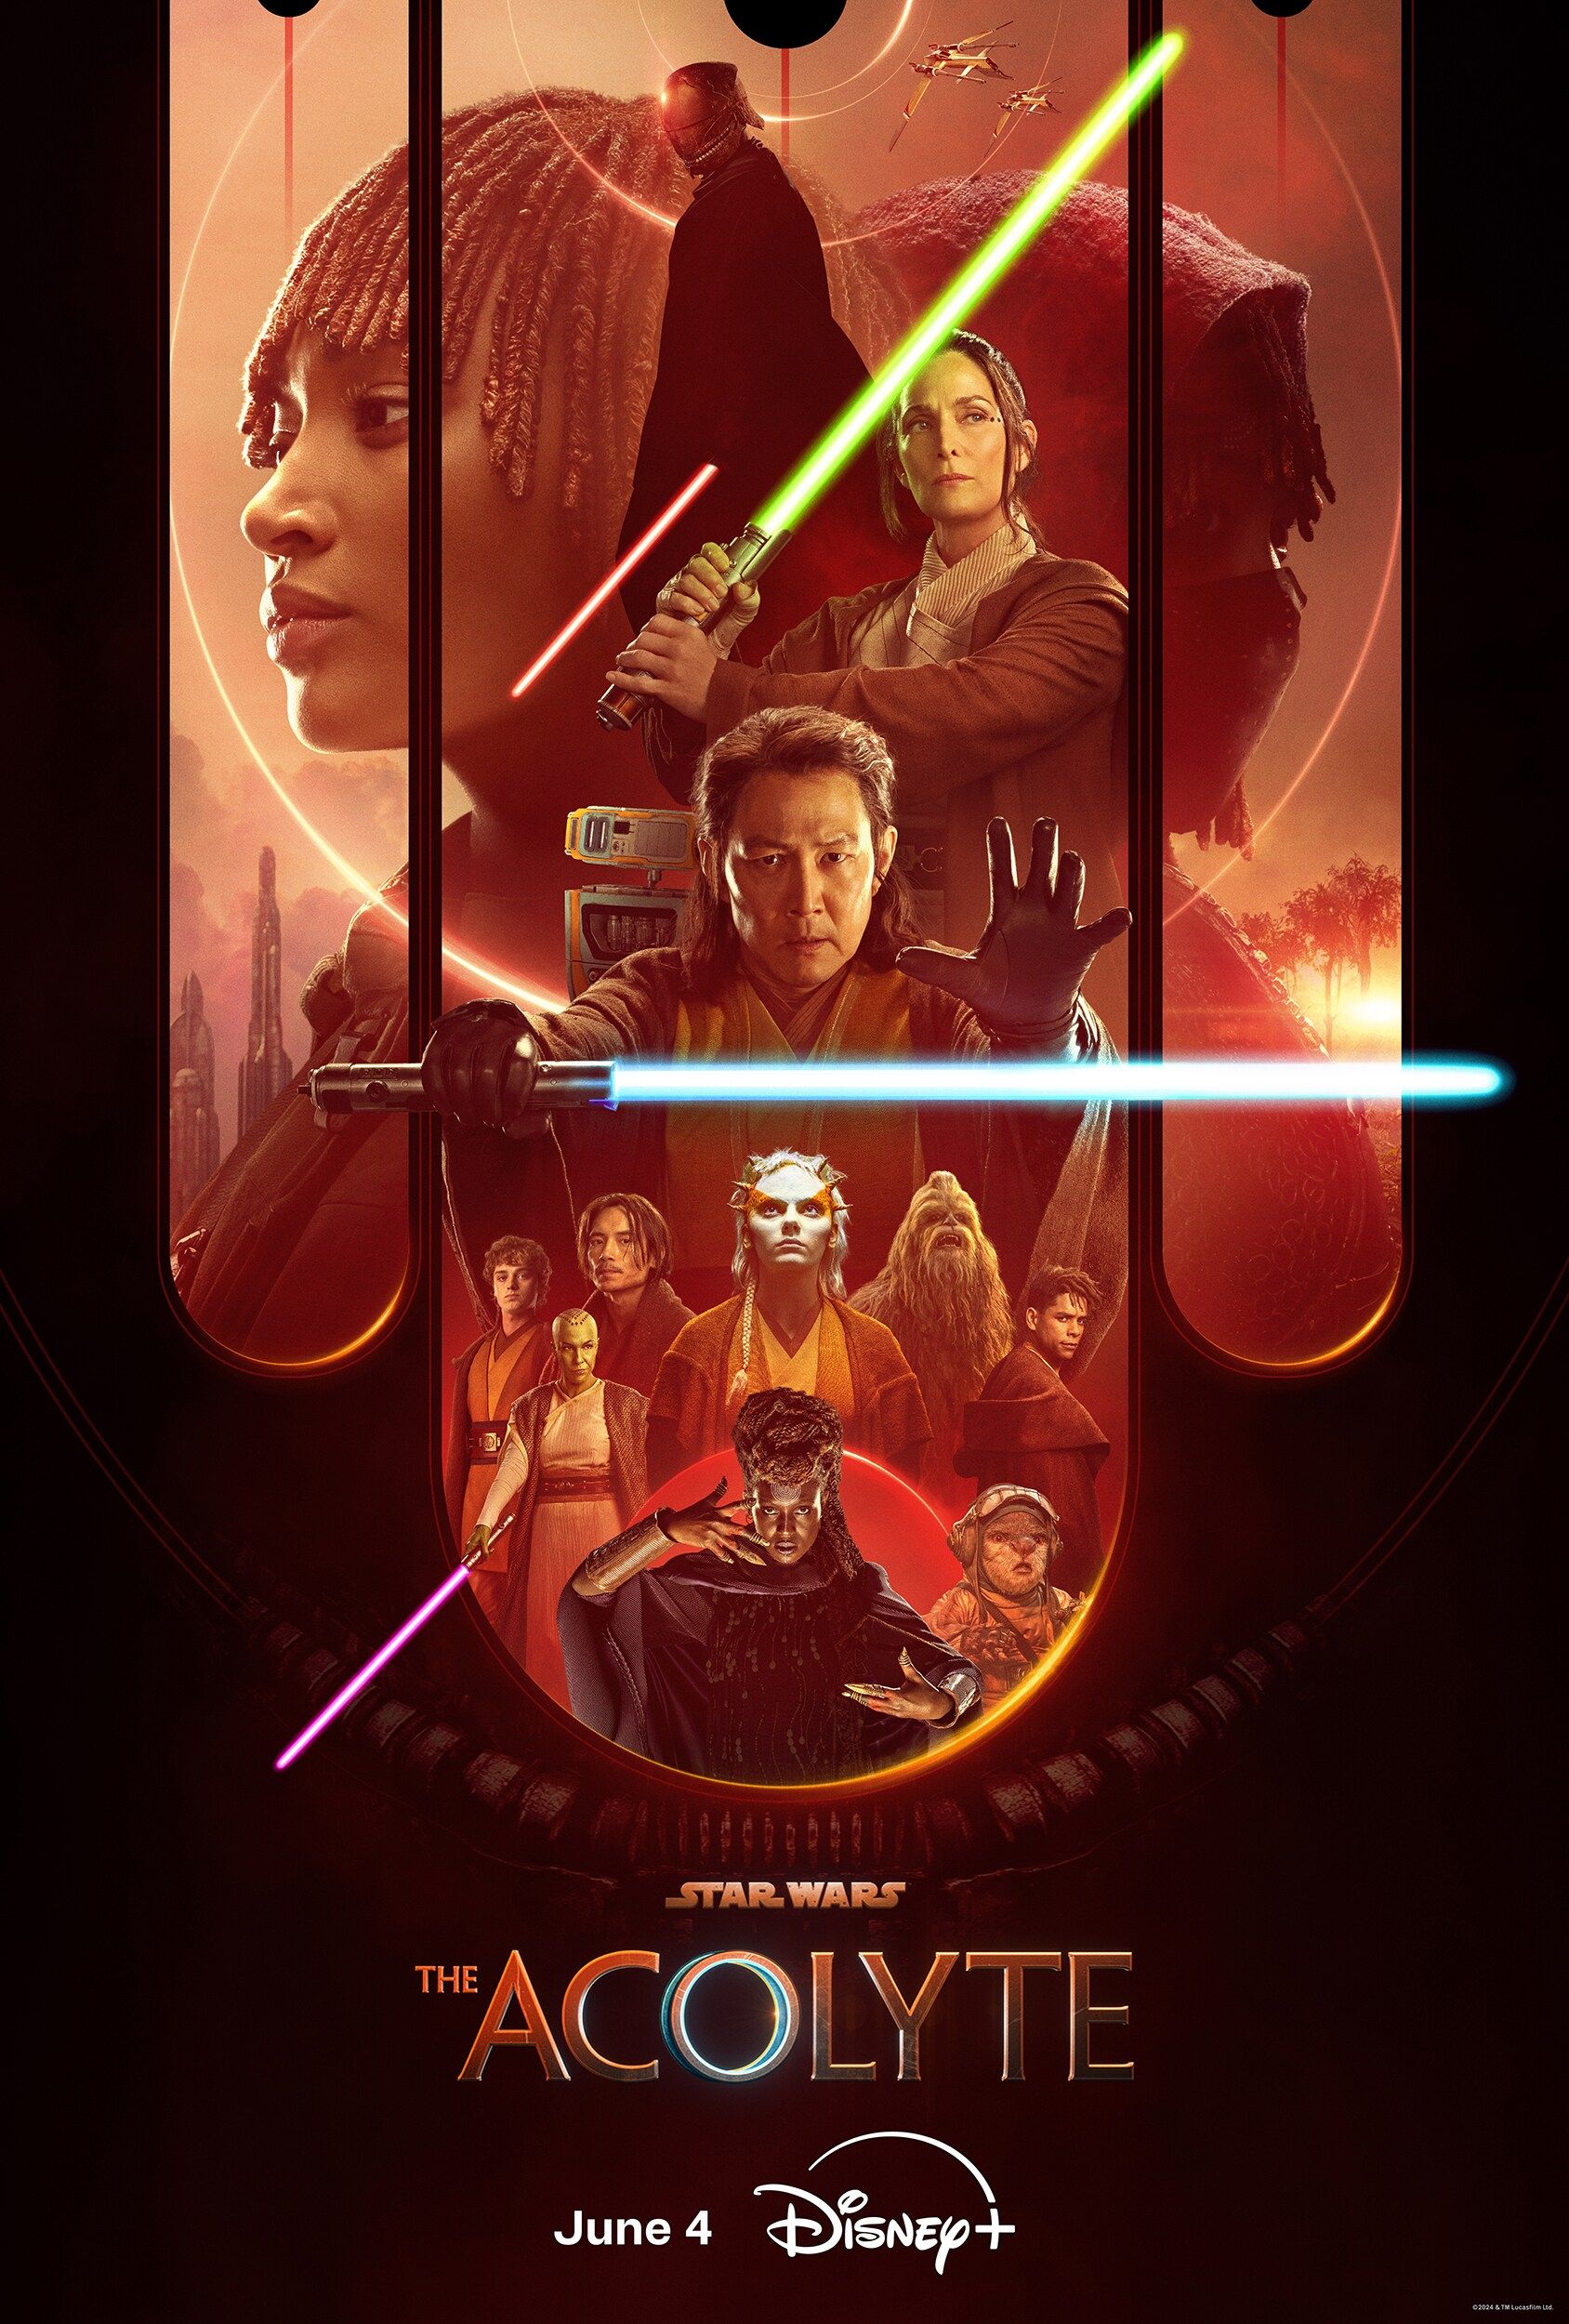 Poster Acolyte Menampilkan Jedi Order, Mae, dan Sith Lord Memegang Lightsaber